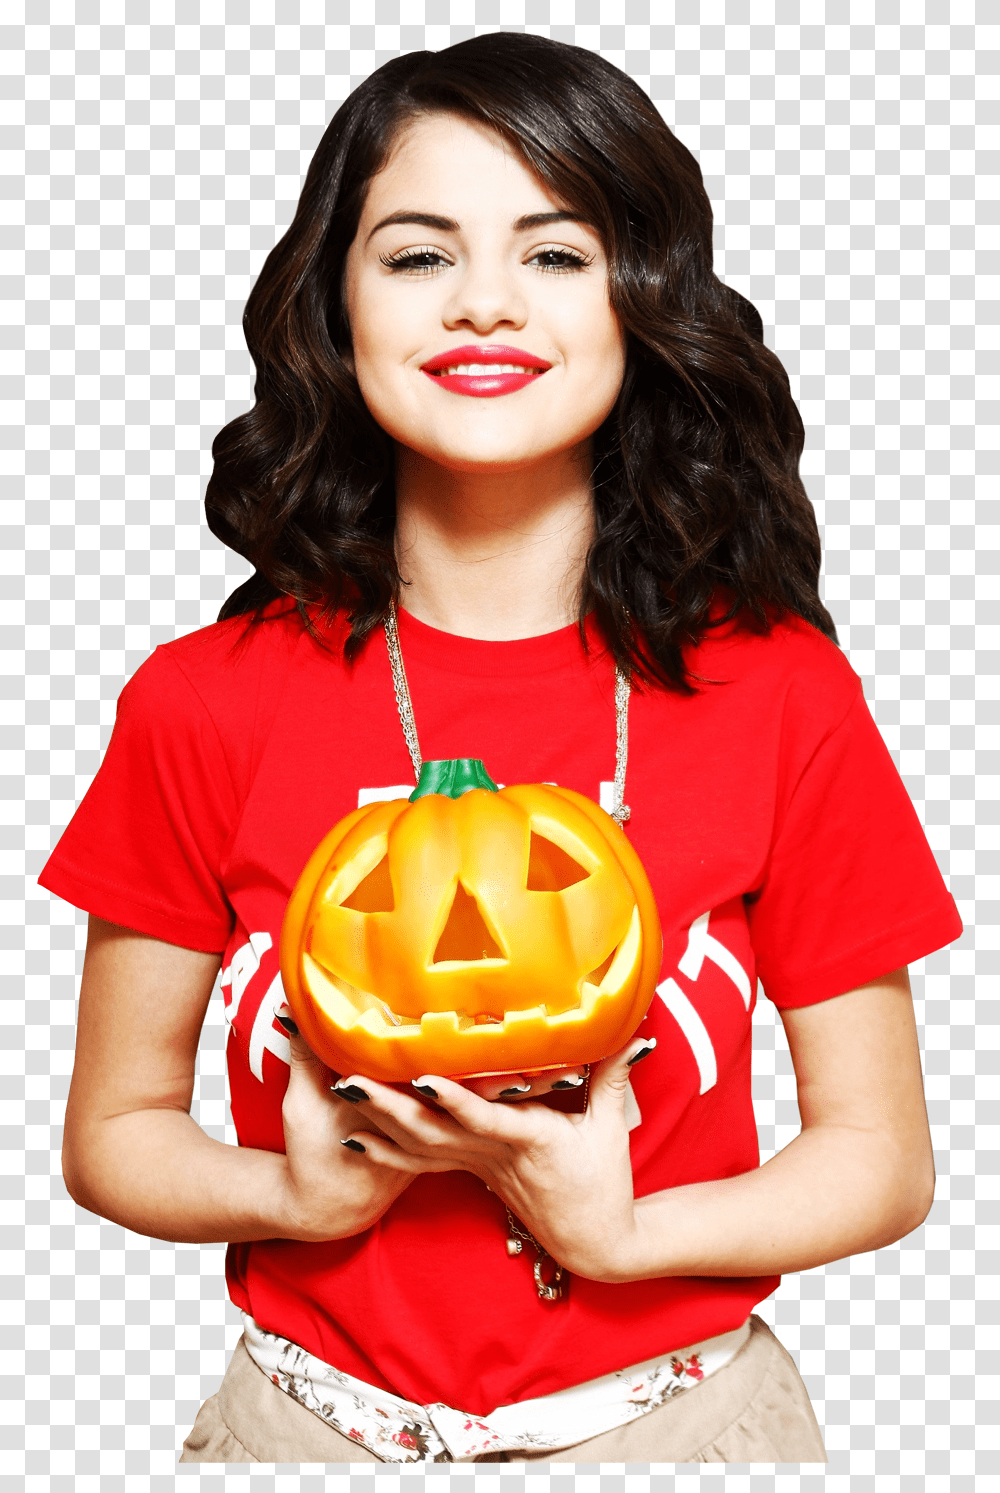 Download Fotos De Selena Gomez Selena Gomez Happy Halloween, Person, Human, Clothing, Apparel Transparent Png